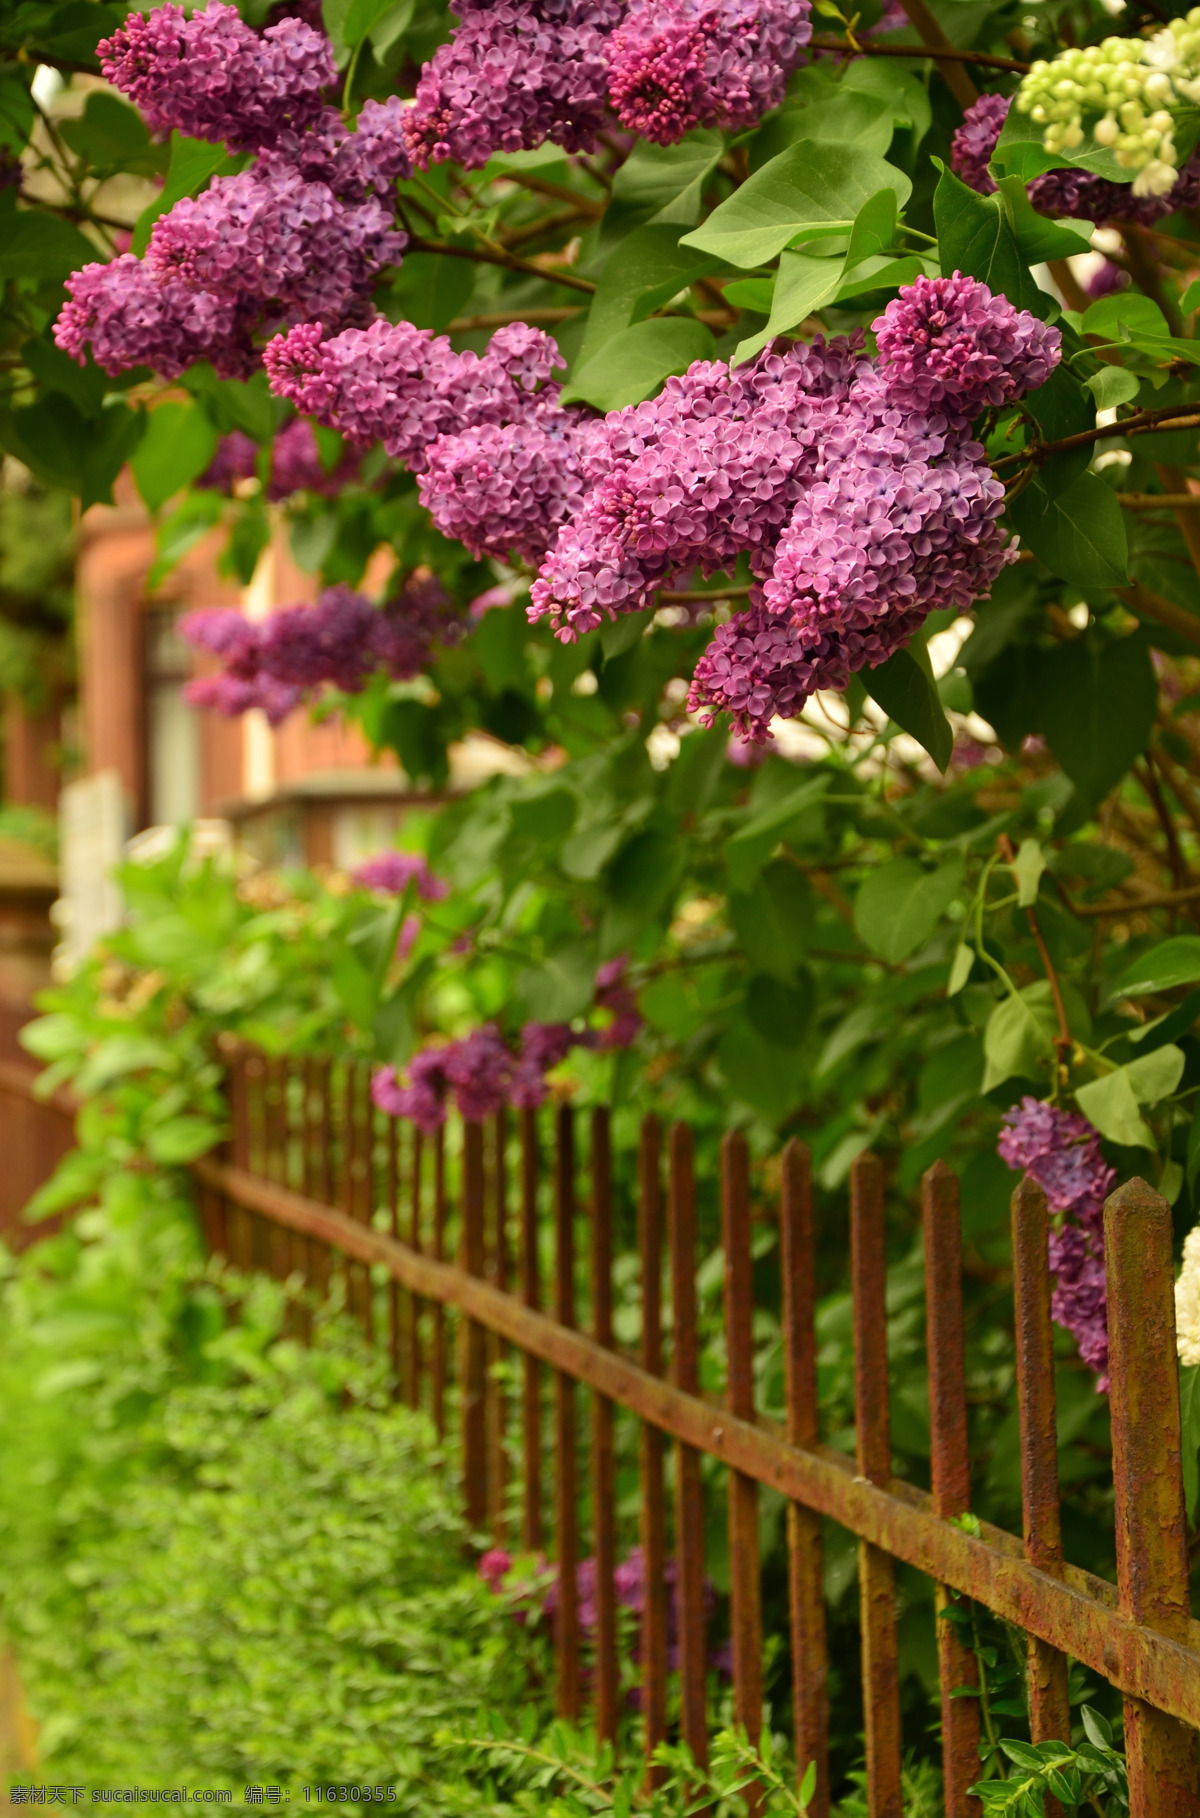 美丽 紫丁香 鲜花 美丽的紫丁香 紫丁香鲜花 花卉 花艺 花之物语 花朵 花瓣 生物世界 花草